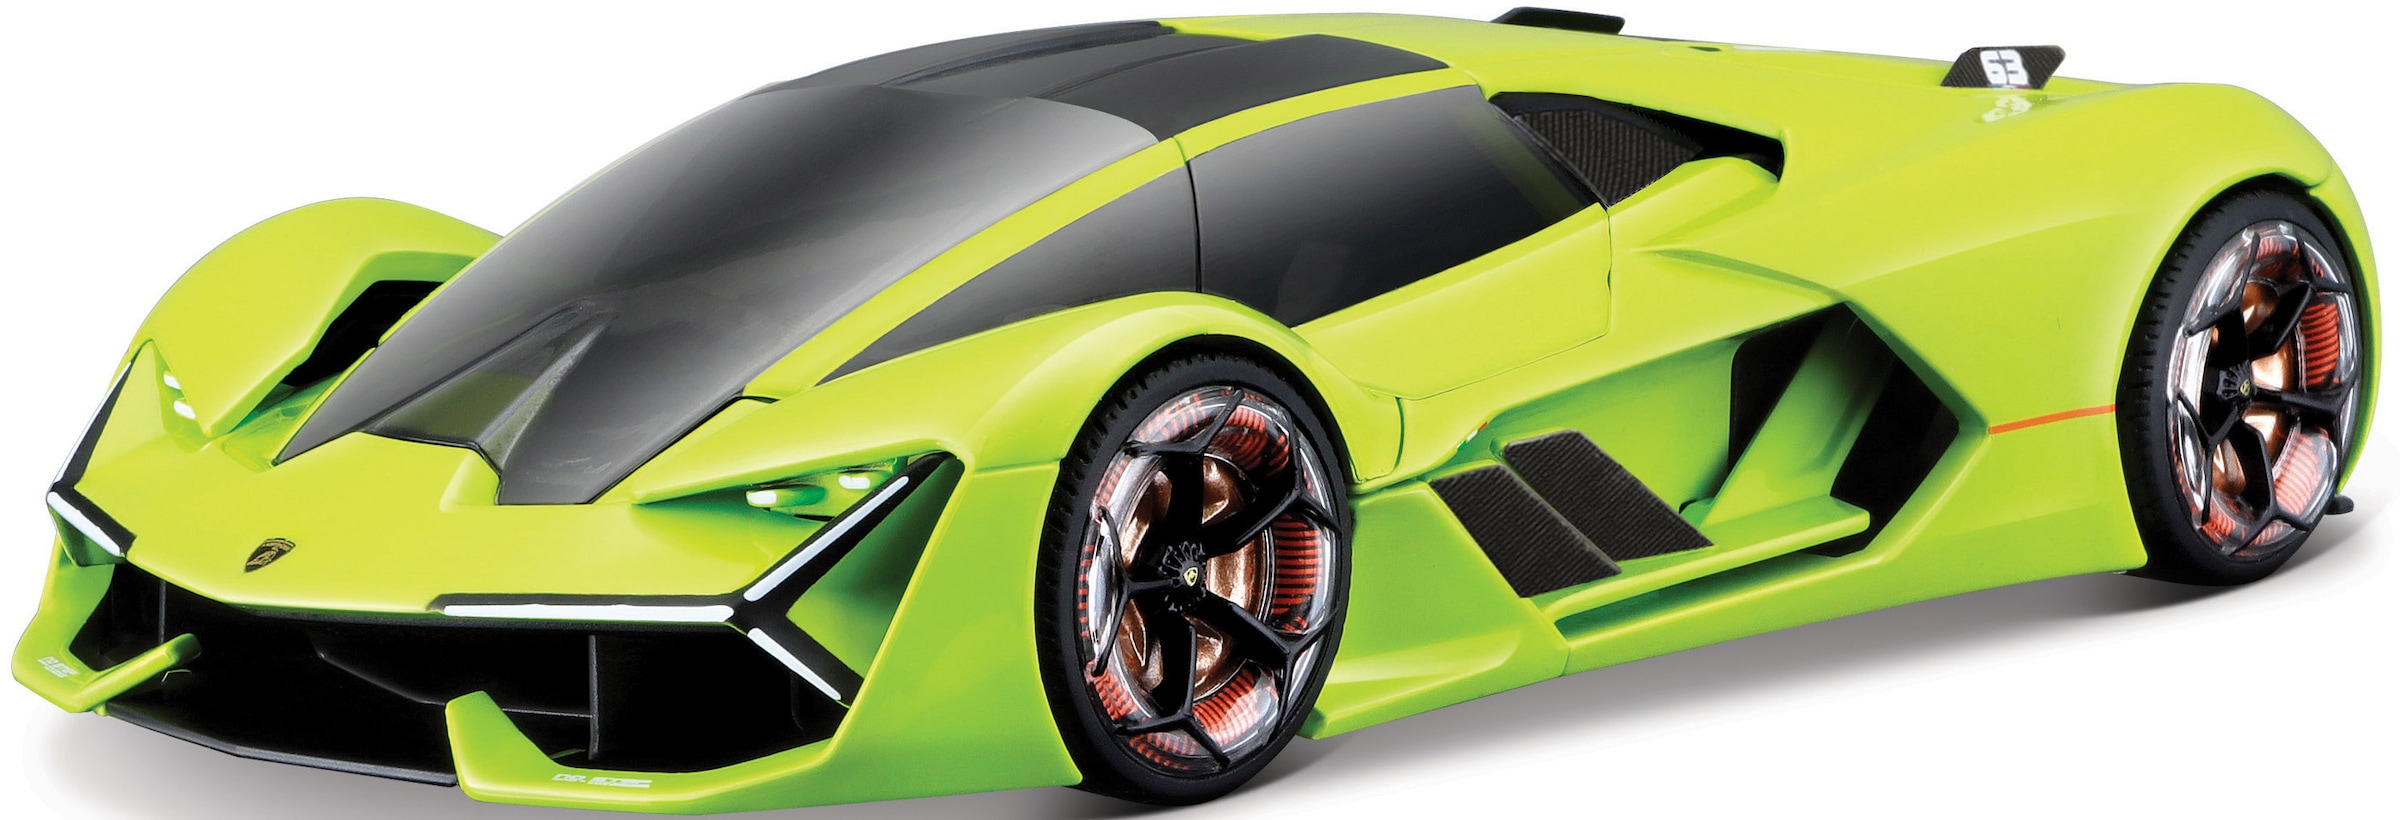 Sammlerauto »Lamborghini Terzo Millennio«, 1:24